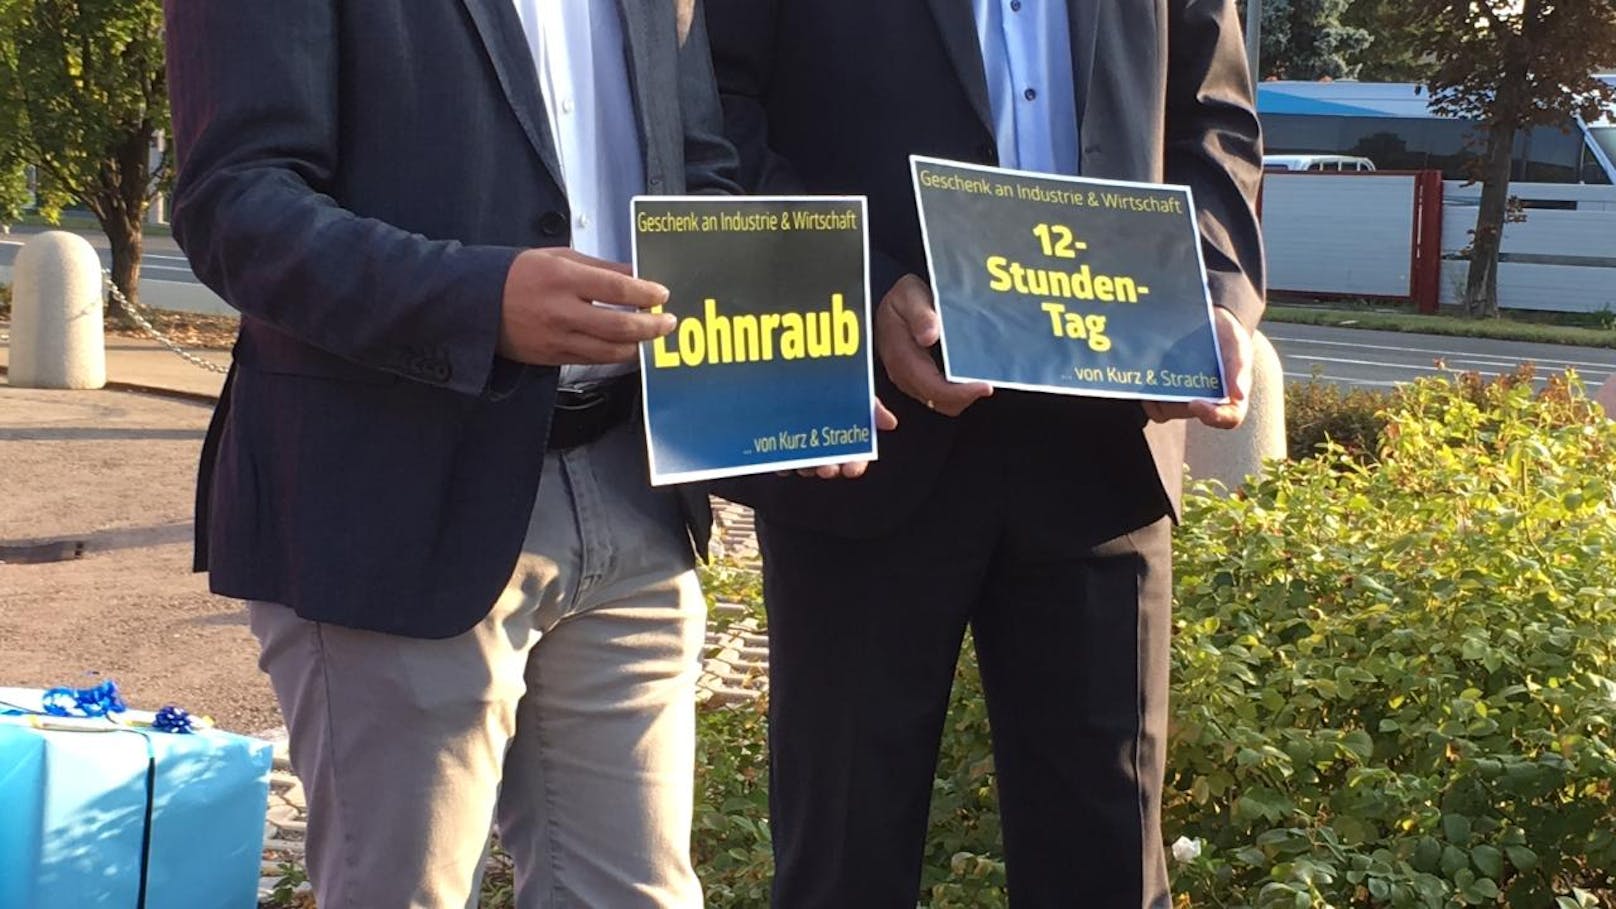 SPÖ-Bundesgeschäftsführer <b>Max Lercher</b>, die Geschäftsführerin der Bundesfrauen<b> Andrea Brunner </b>und der SPÖ-NÖ-Landesgeschäftsführer <b>Wolfgang Kocevar </b>protestieren vor KTM-Filiale in Vösendorf gegen 12-Stunden-Tag (31. August 2018).